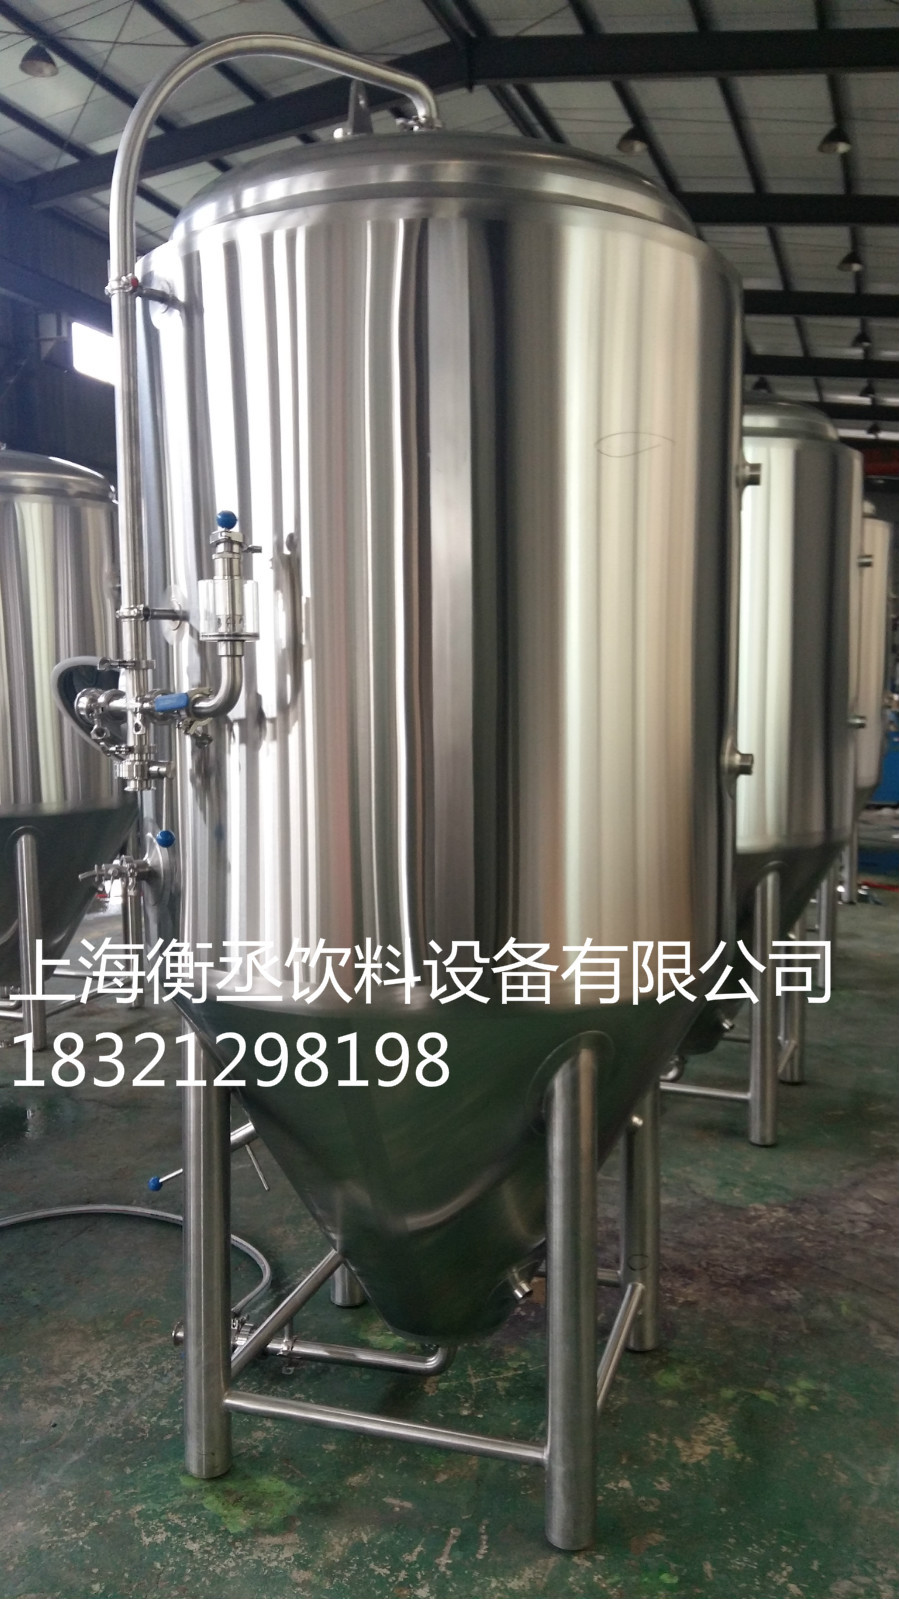 优质自酿啤酒设备、精工生产线设备供应商